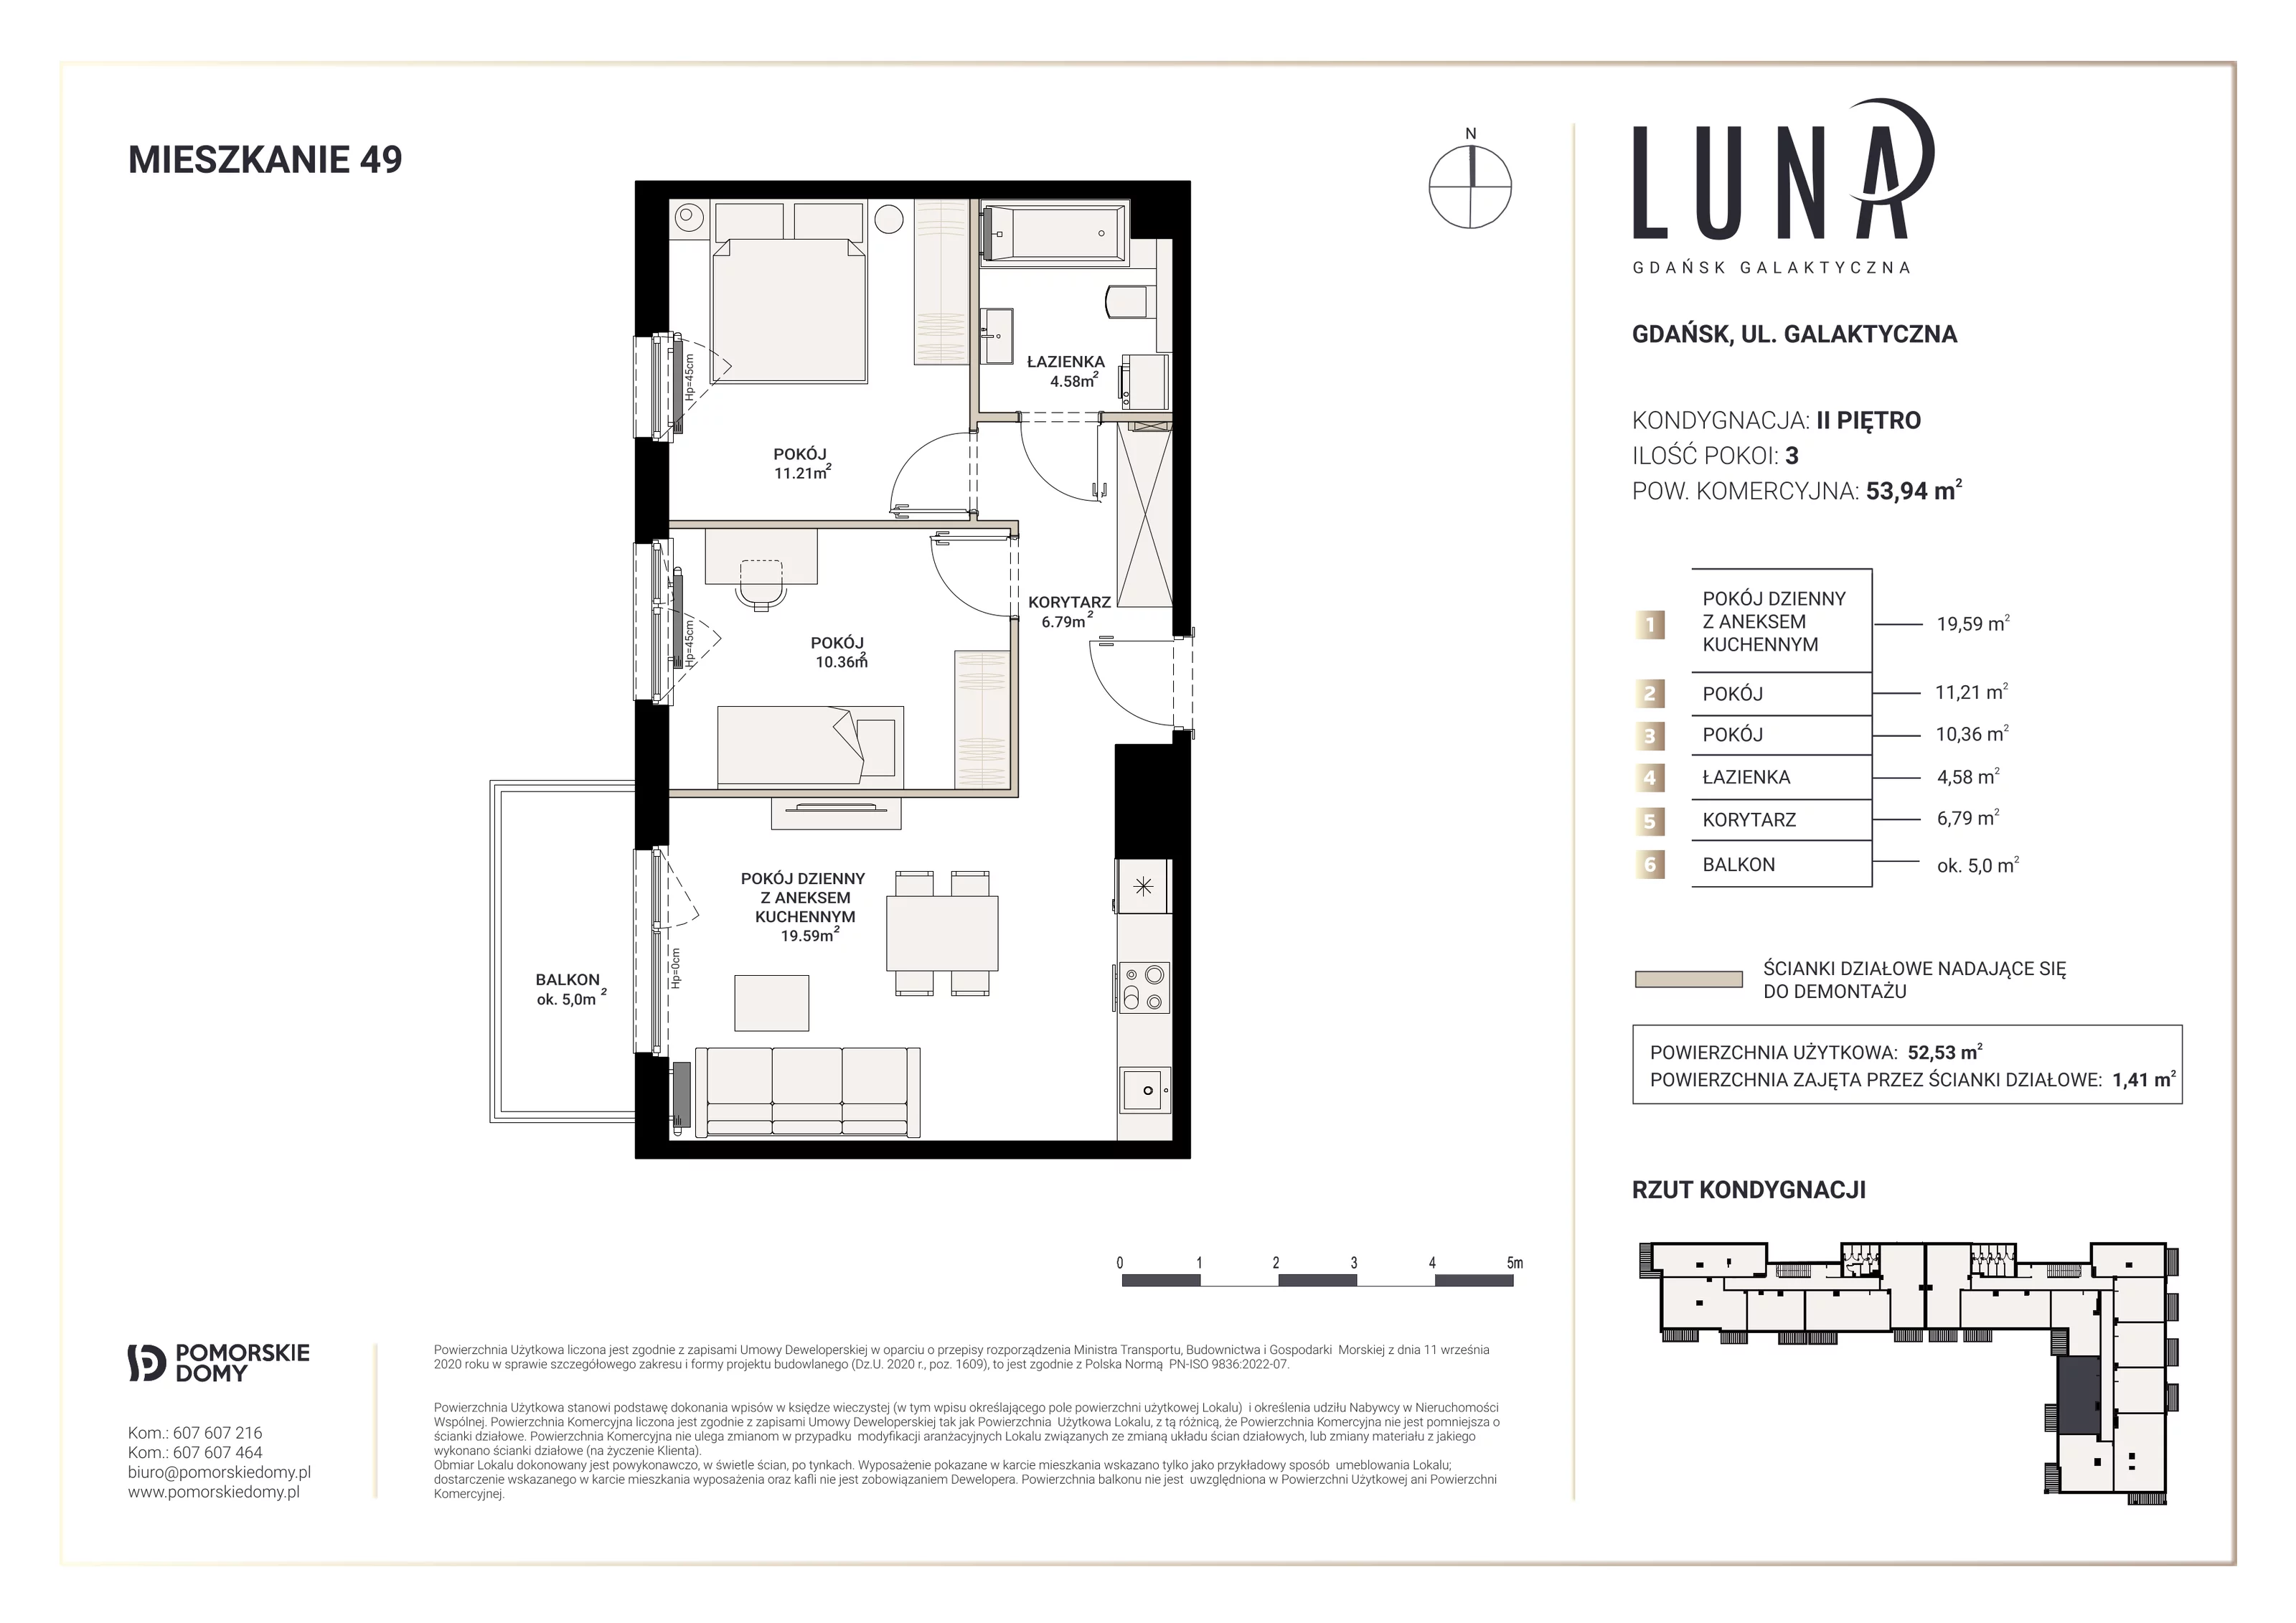 Mieszkanie 52,53 m², piętro 2, oferta nr 49, Luna, Gdańsk, Osowa, ul. Galaktyczna/Homera